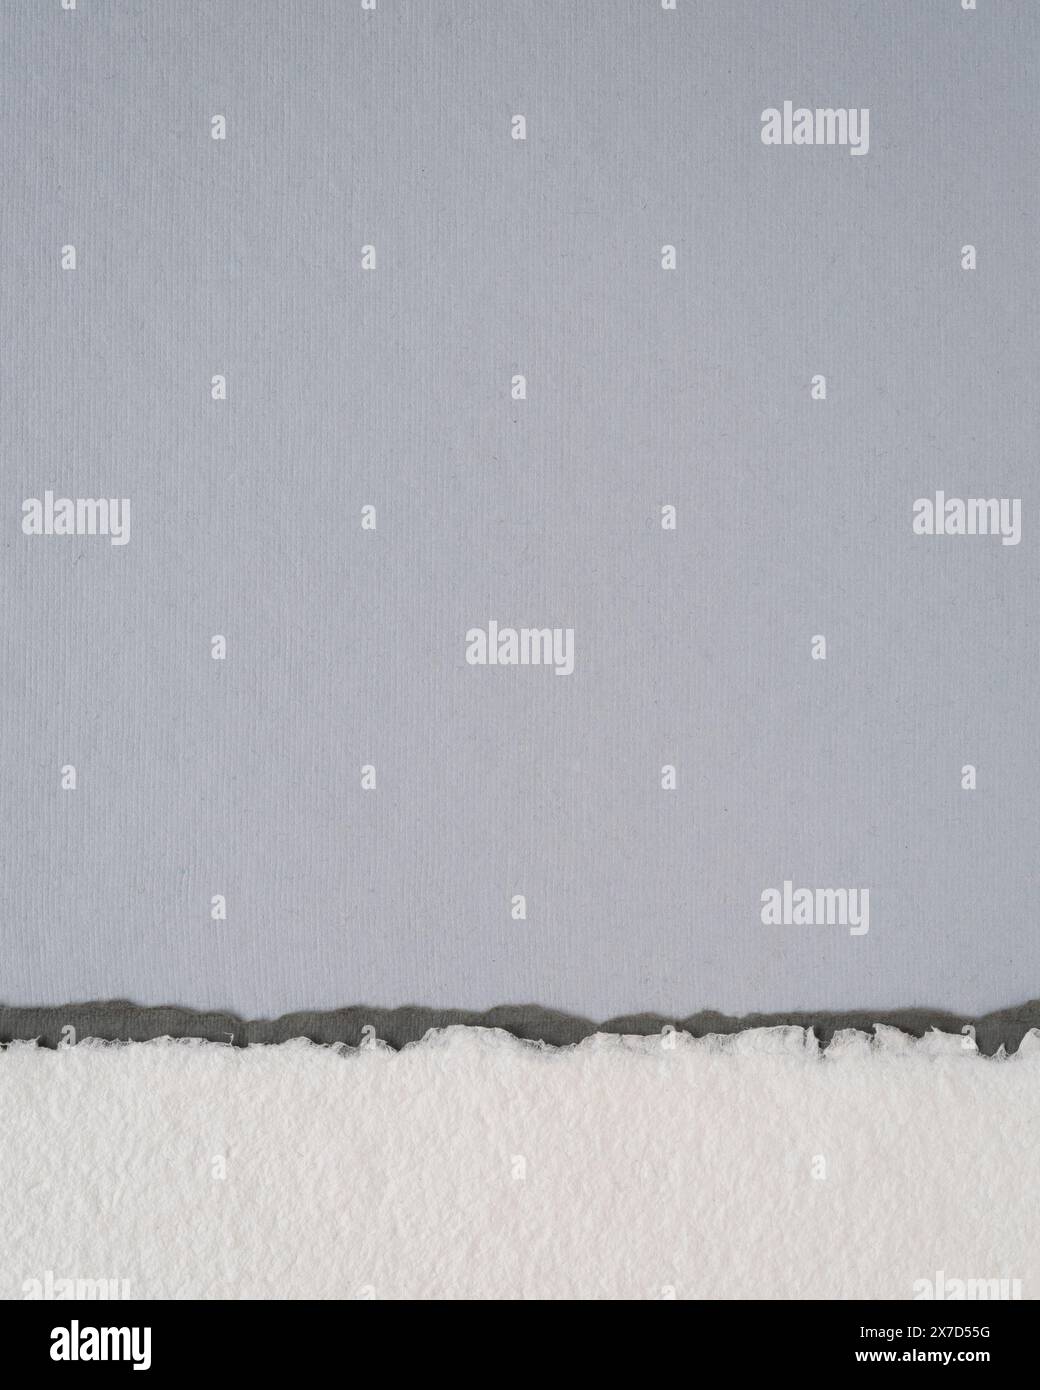 Abstrakte Papierlandschaft im vertikalen Format - Sammlung handgefertigter texturierter Kunstdruckpapiere Stockfoto